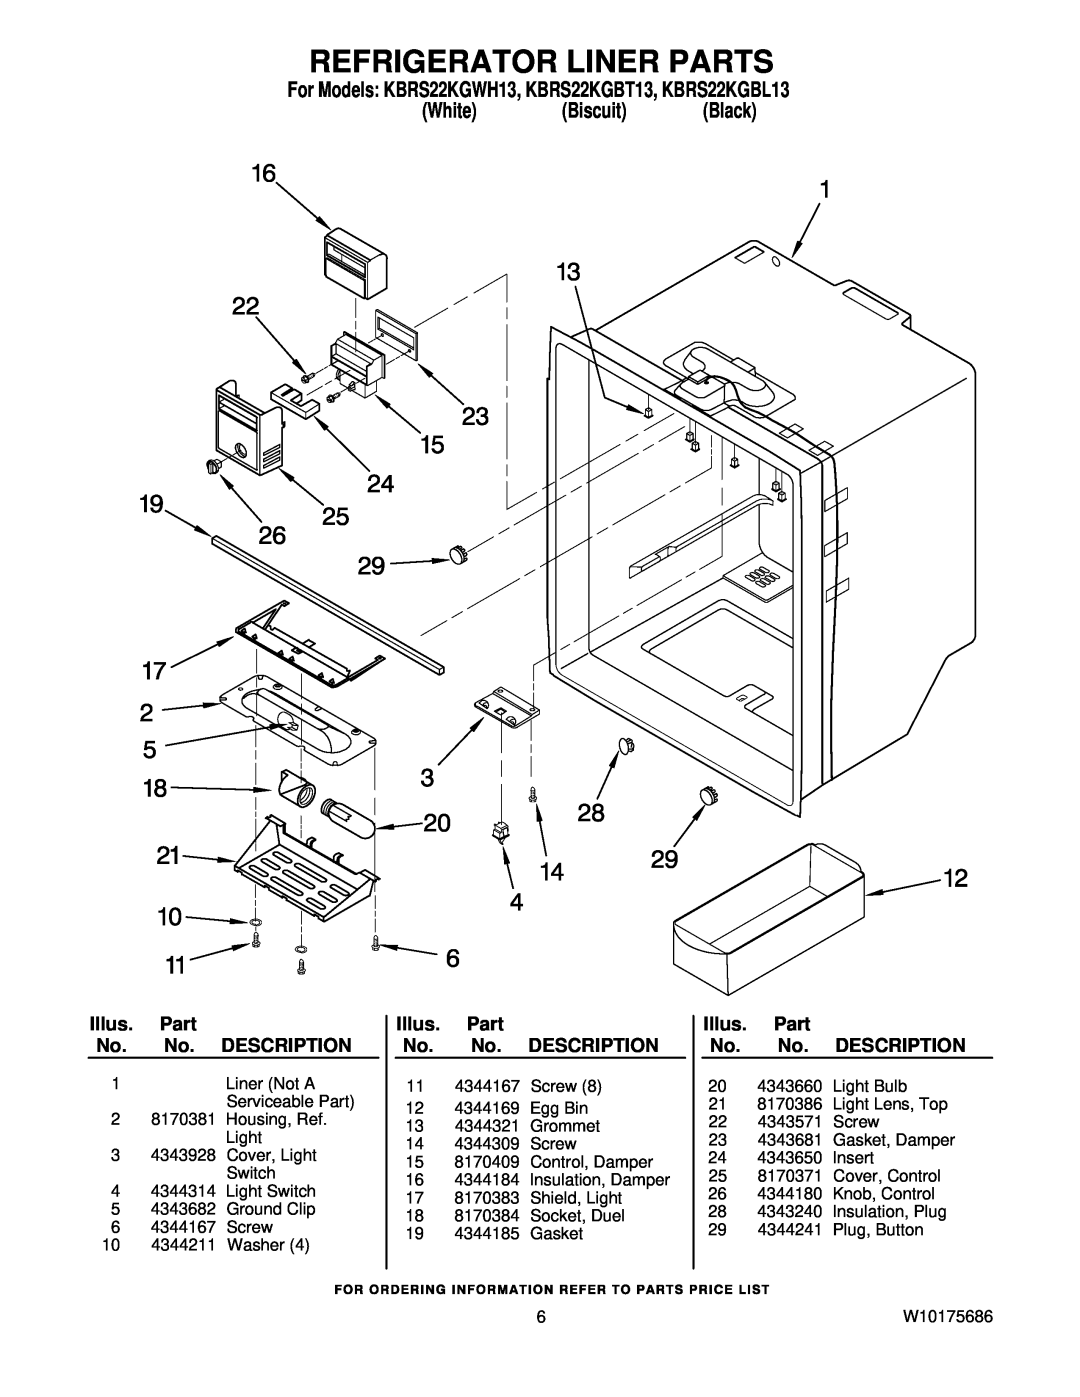 KitchenAid manual Refrigerator Liner Parts, For Models KBRS22KGWH13, KBRS22KGBT13, KBRS22KGBL13, White Biscuit Black 